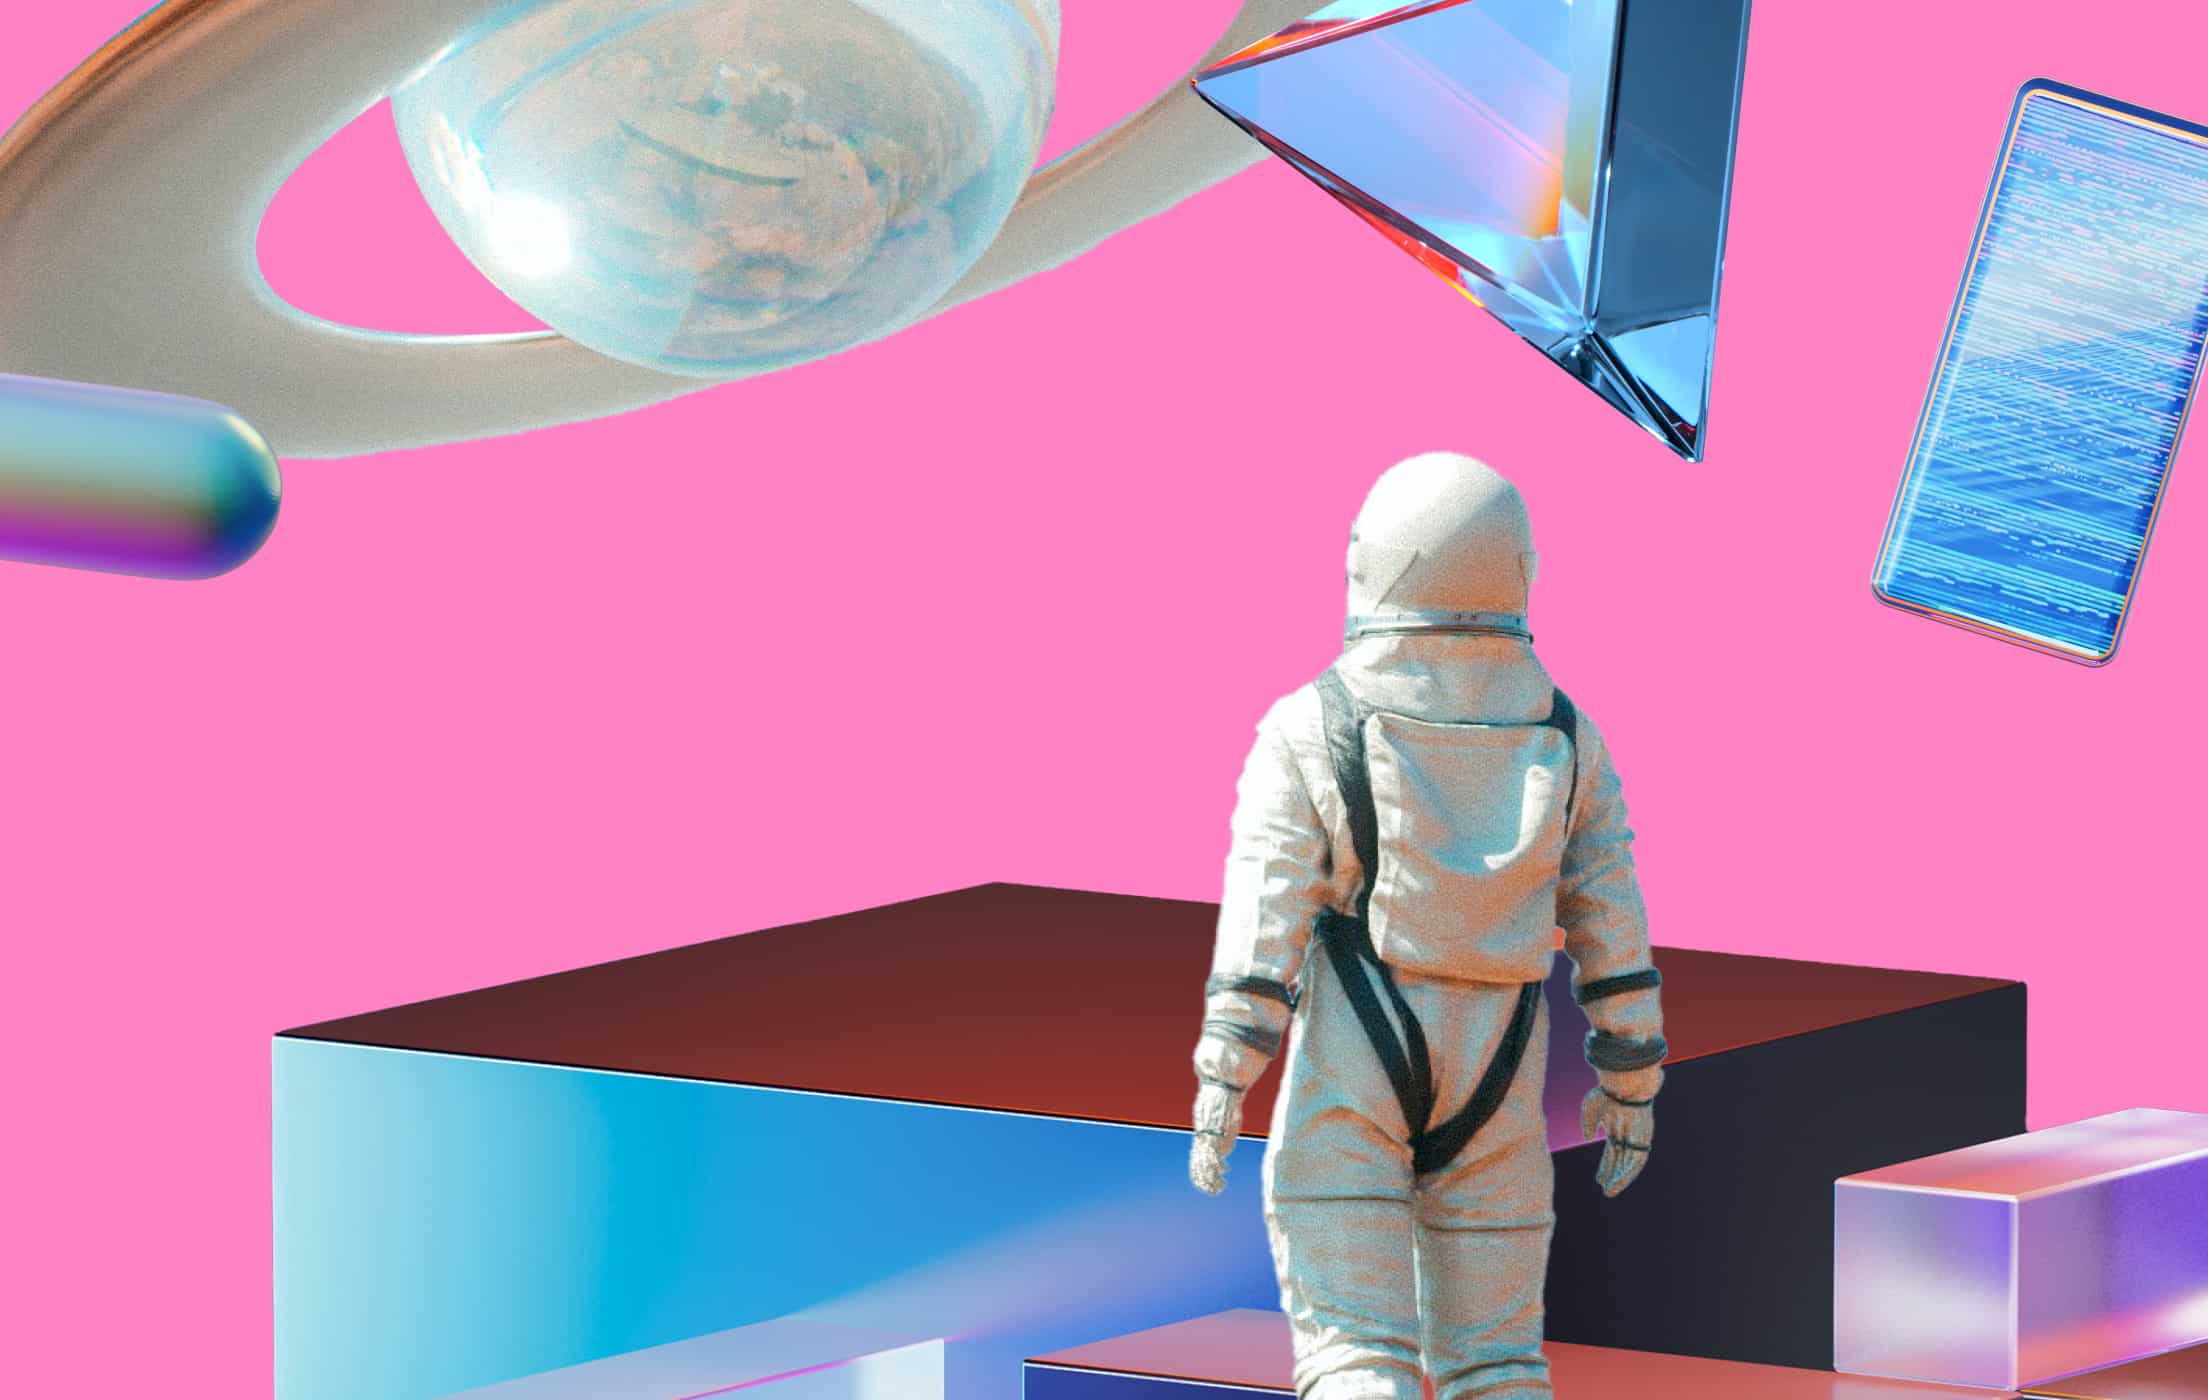 Un astronaute dans un espace artificiel rose